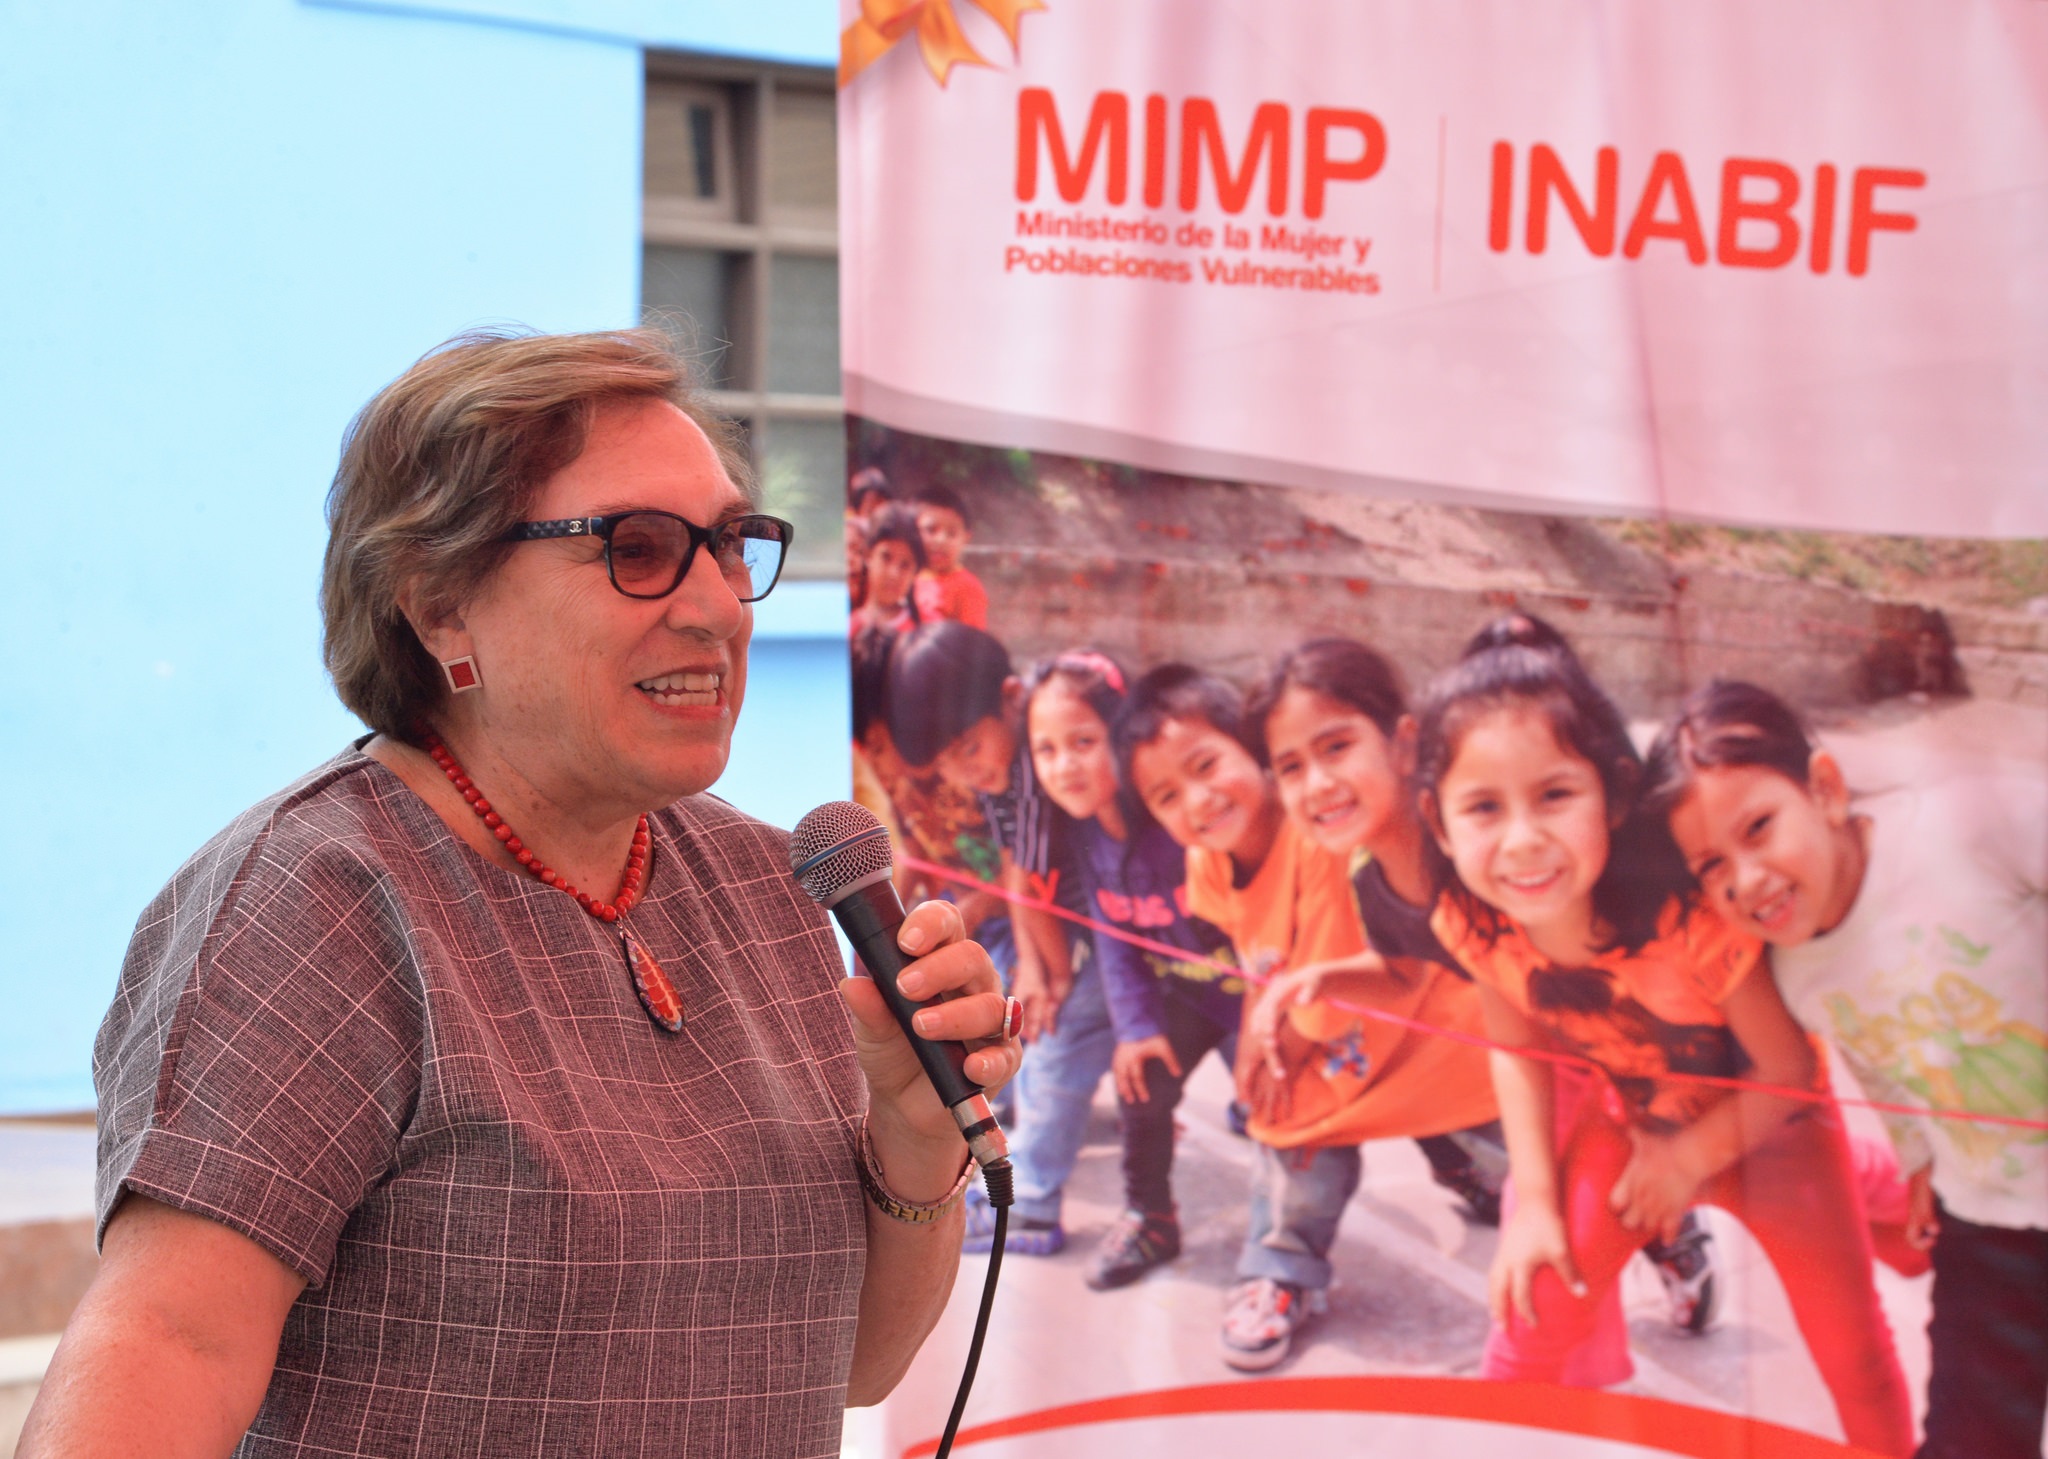 MIMP protege a personas adultas mayores durante estado de emergencia -  Noticias - Ministerio de la Mujer y Poblaciones Vulnerables - Plataforma  del Estado Peruano